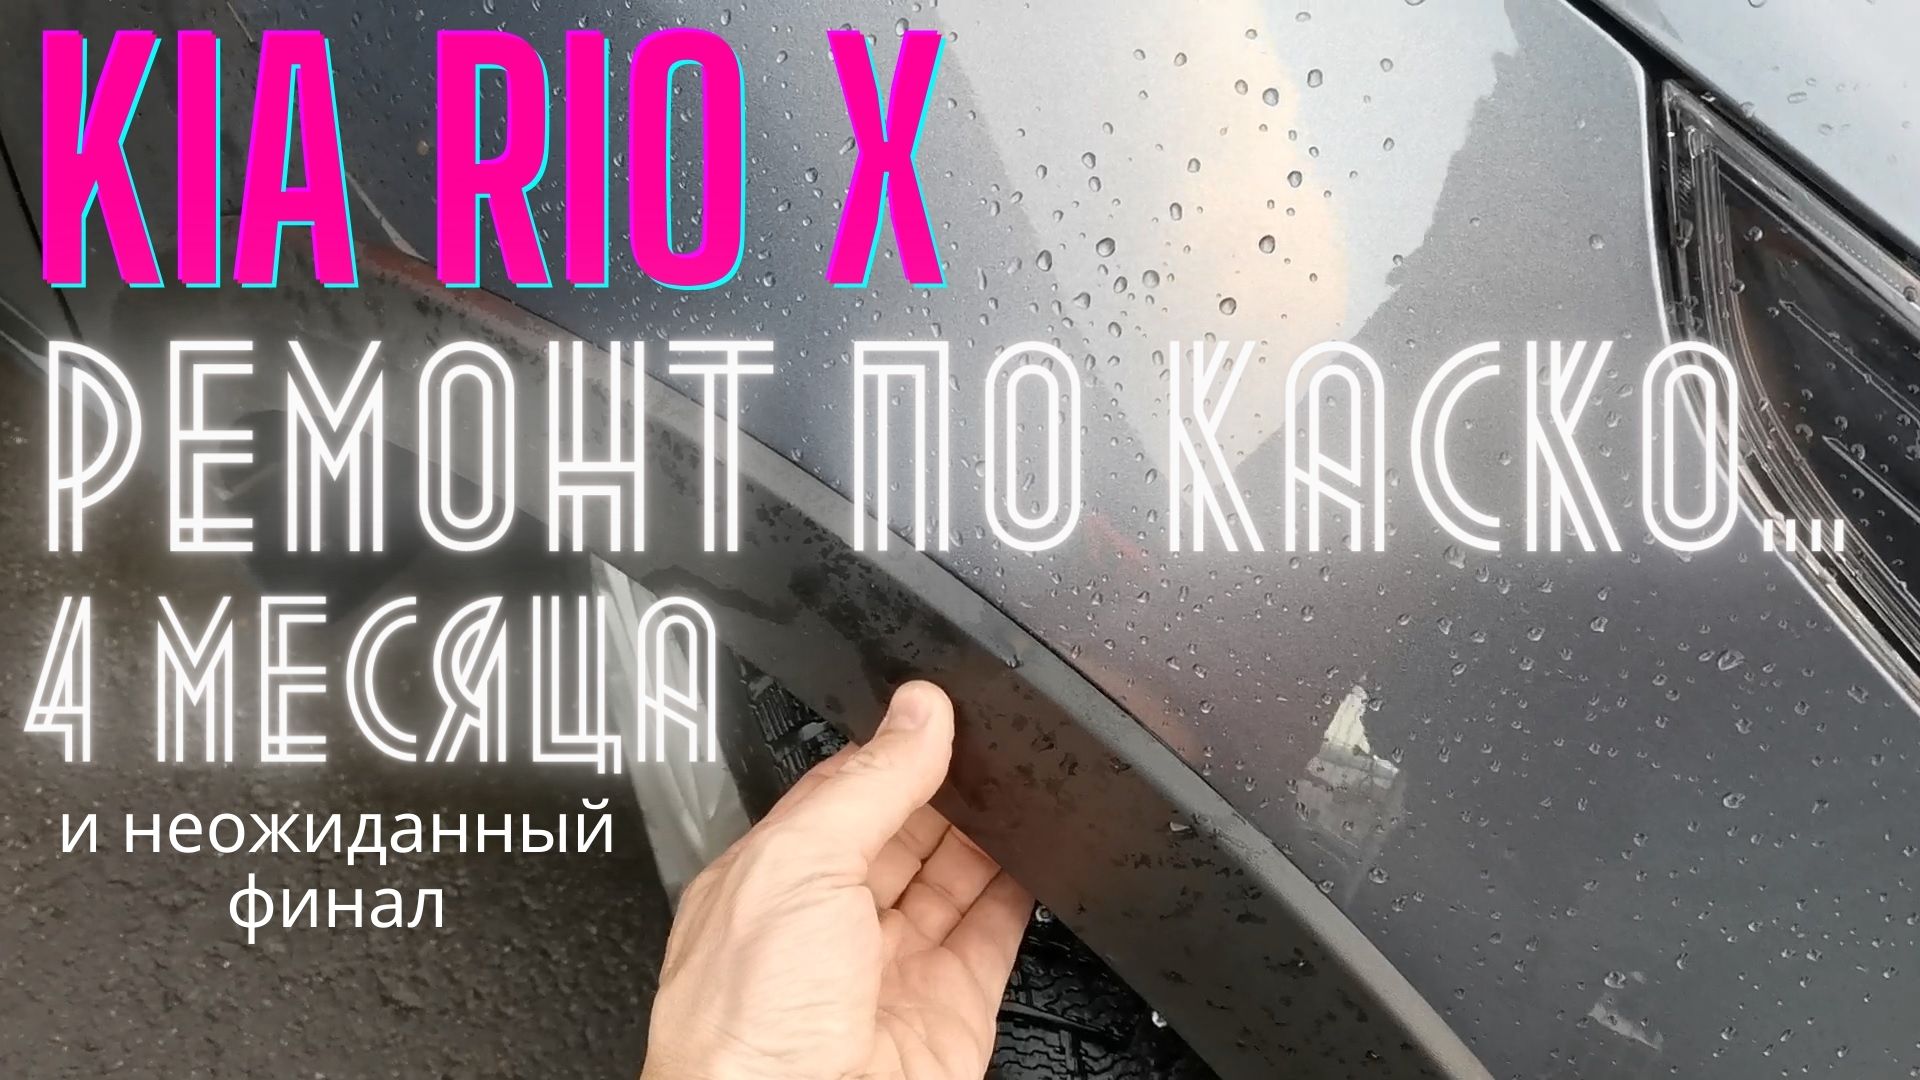 KIA Rio X: ремонт по КАСКО 4 месяца и неожиданный финал